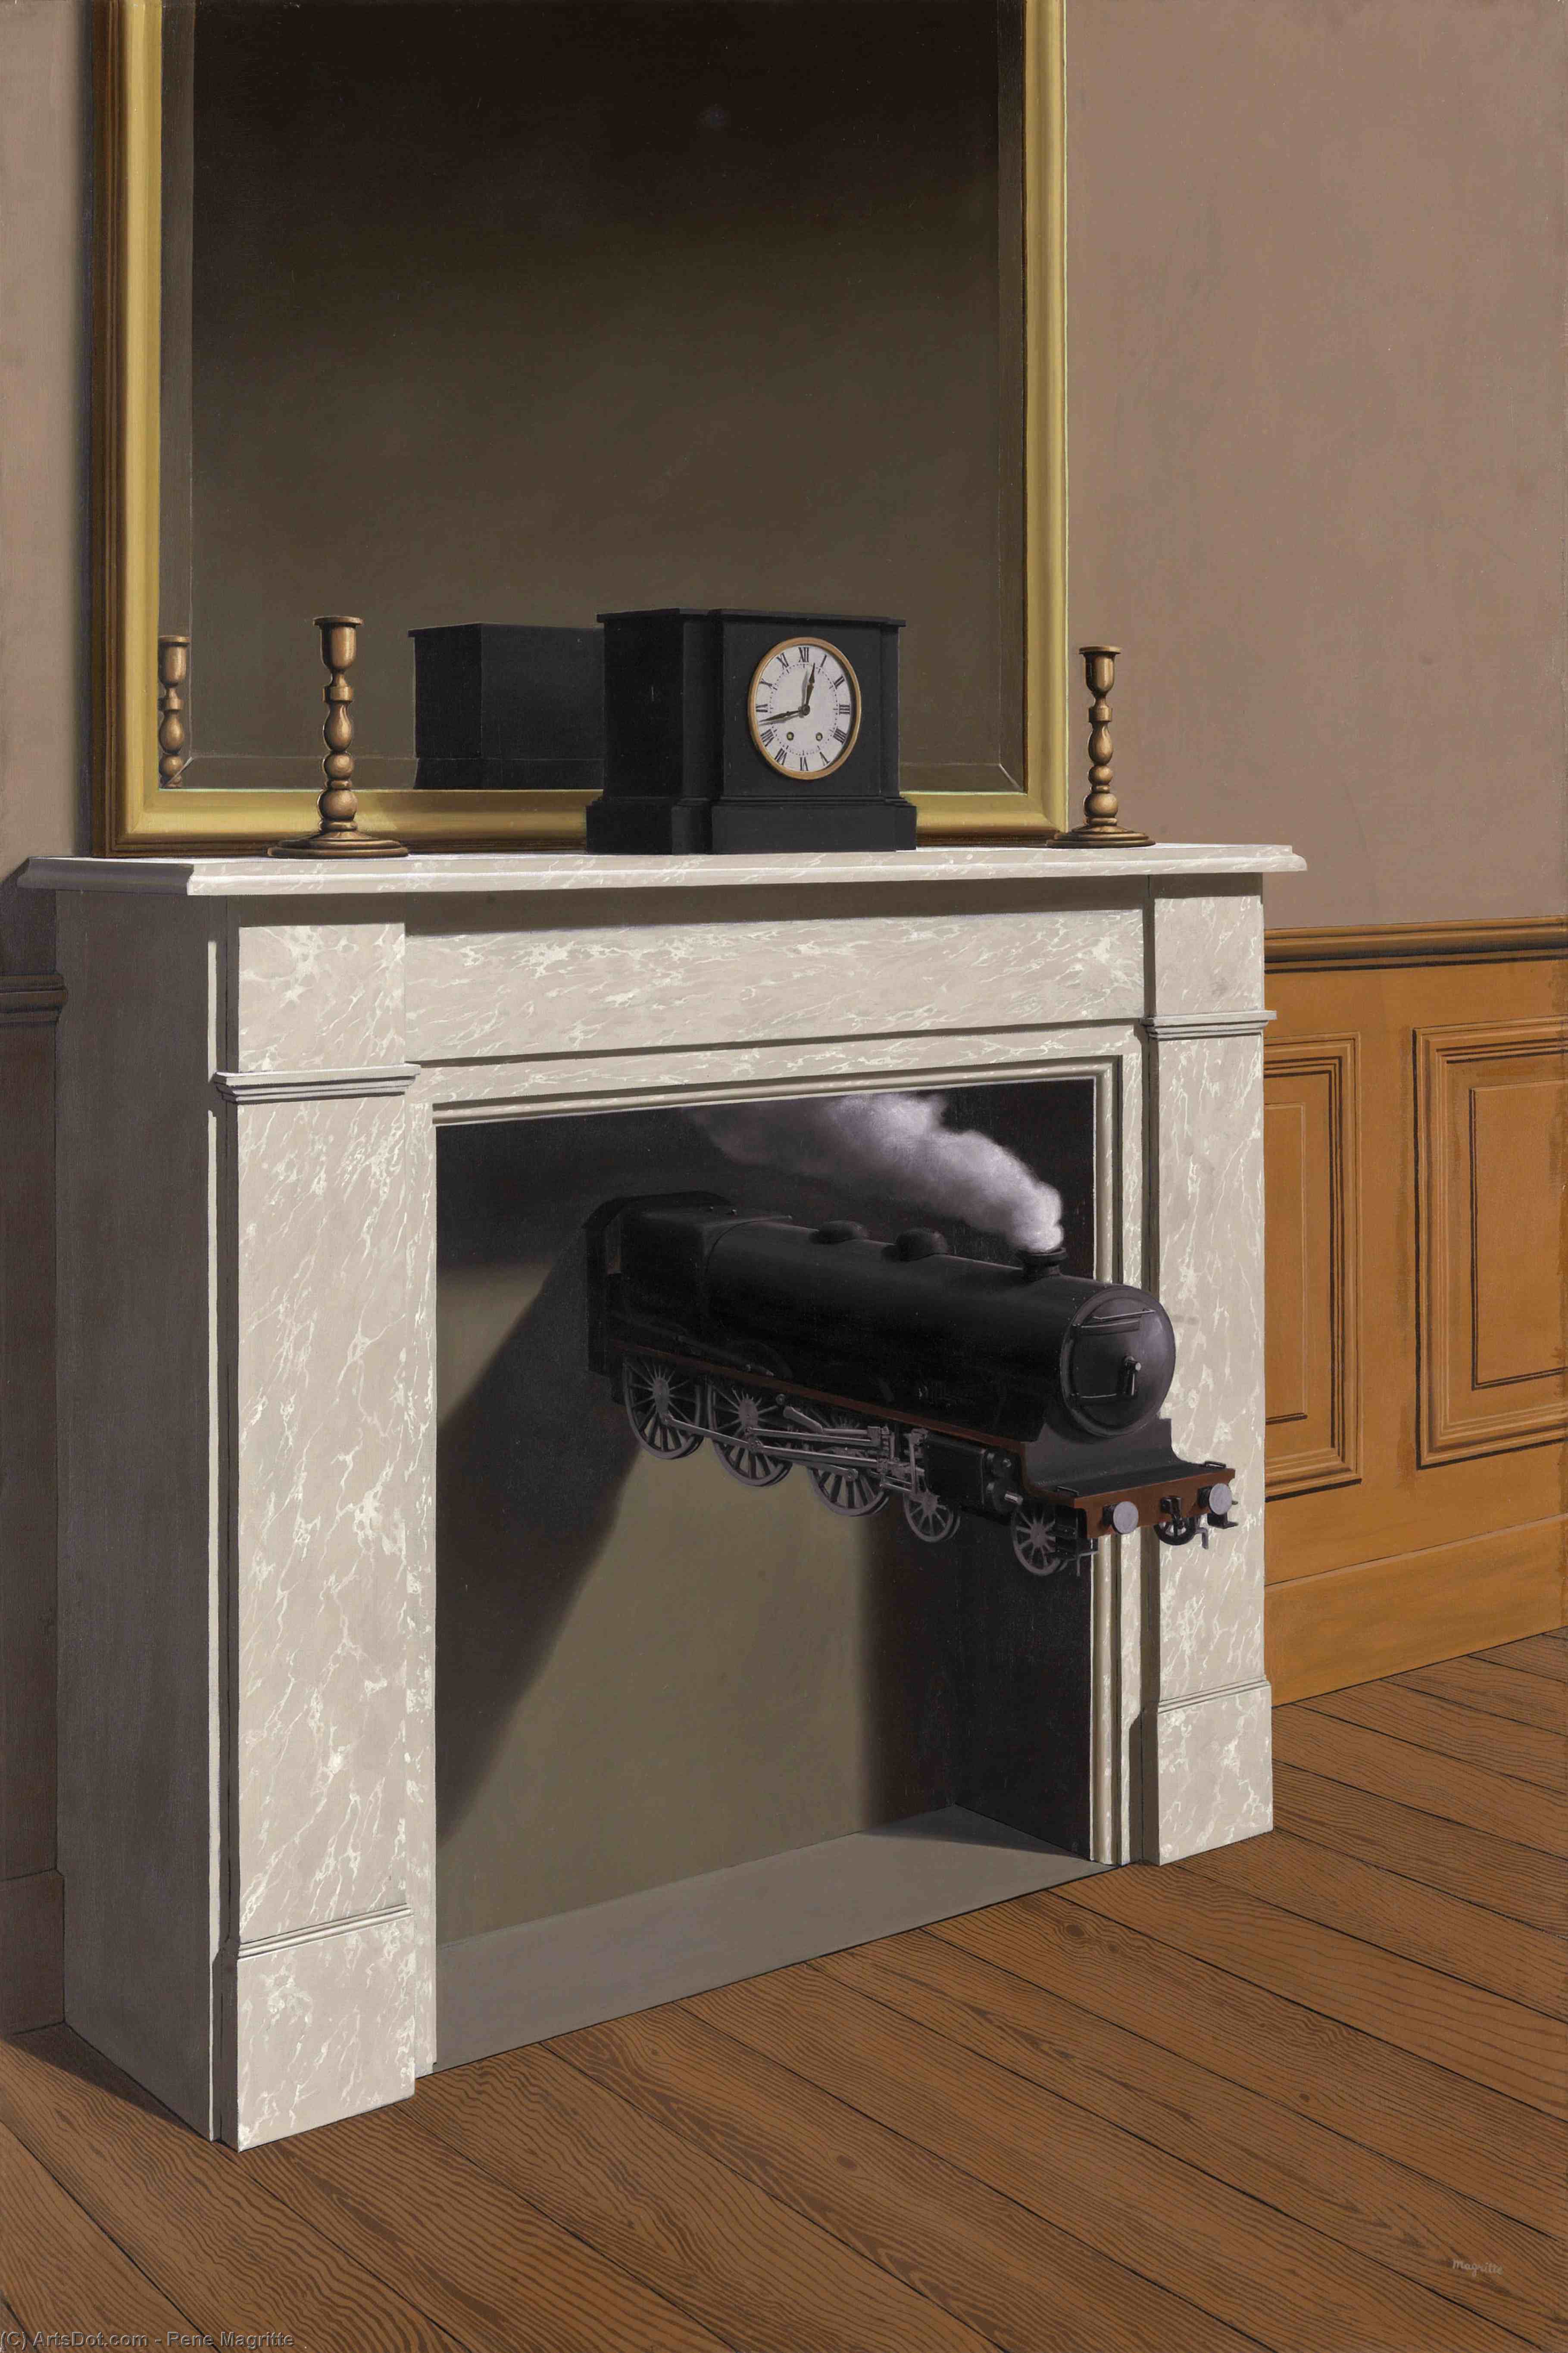 WikiOO.org - אנציקלופדיה לאמנויות יפות - ציור, יצירות אמנות Rene Magritte - Time transfixed